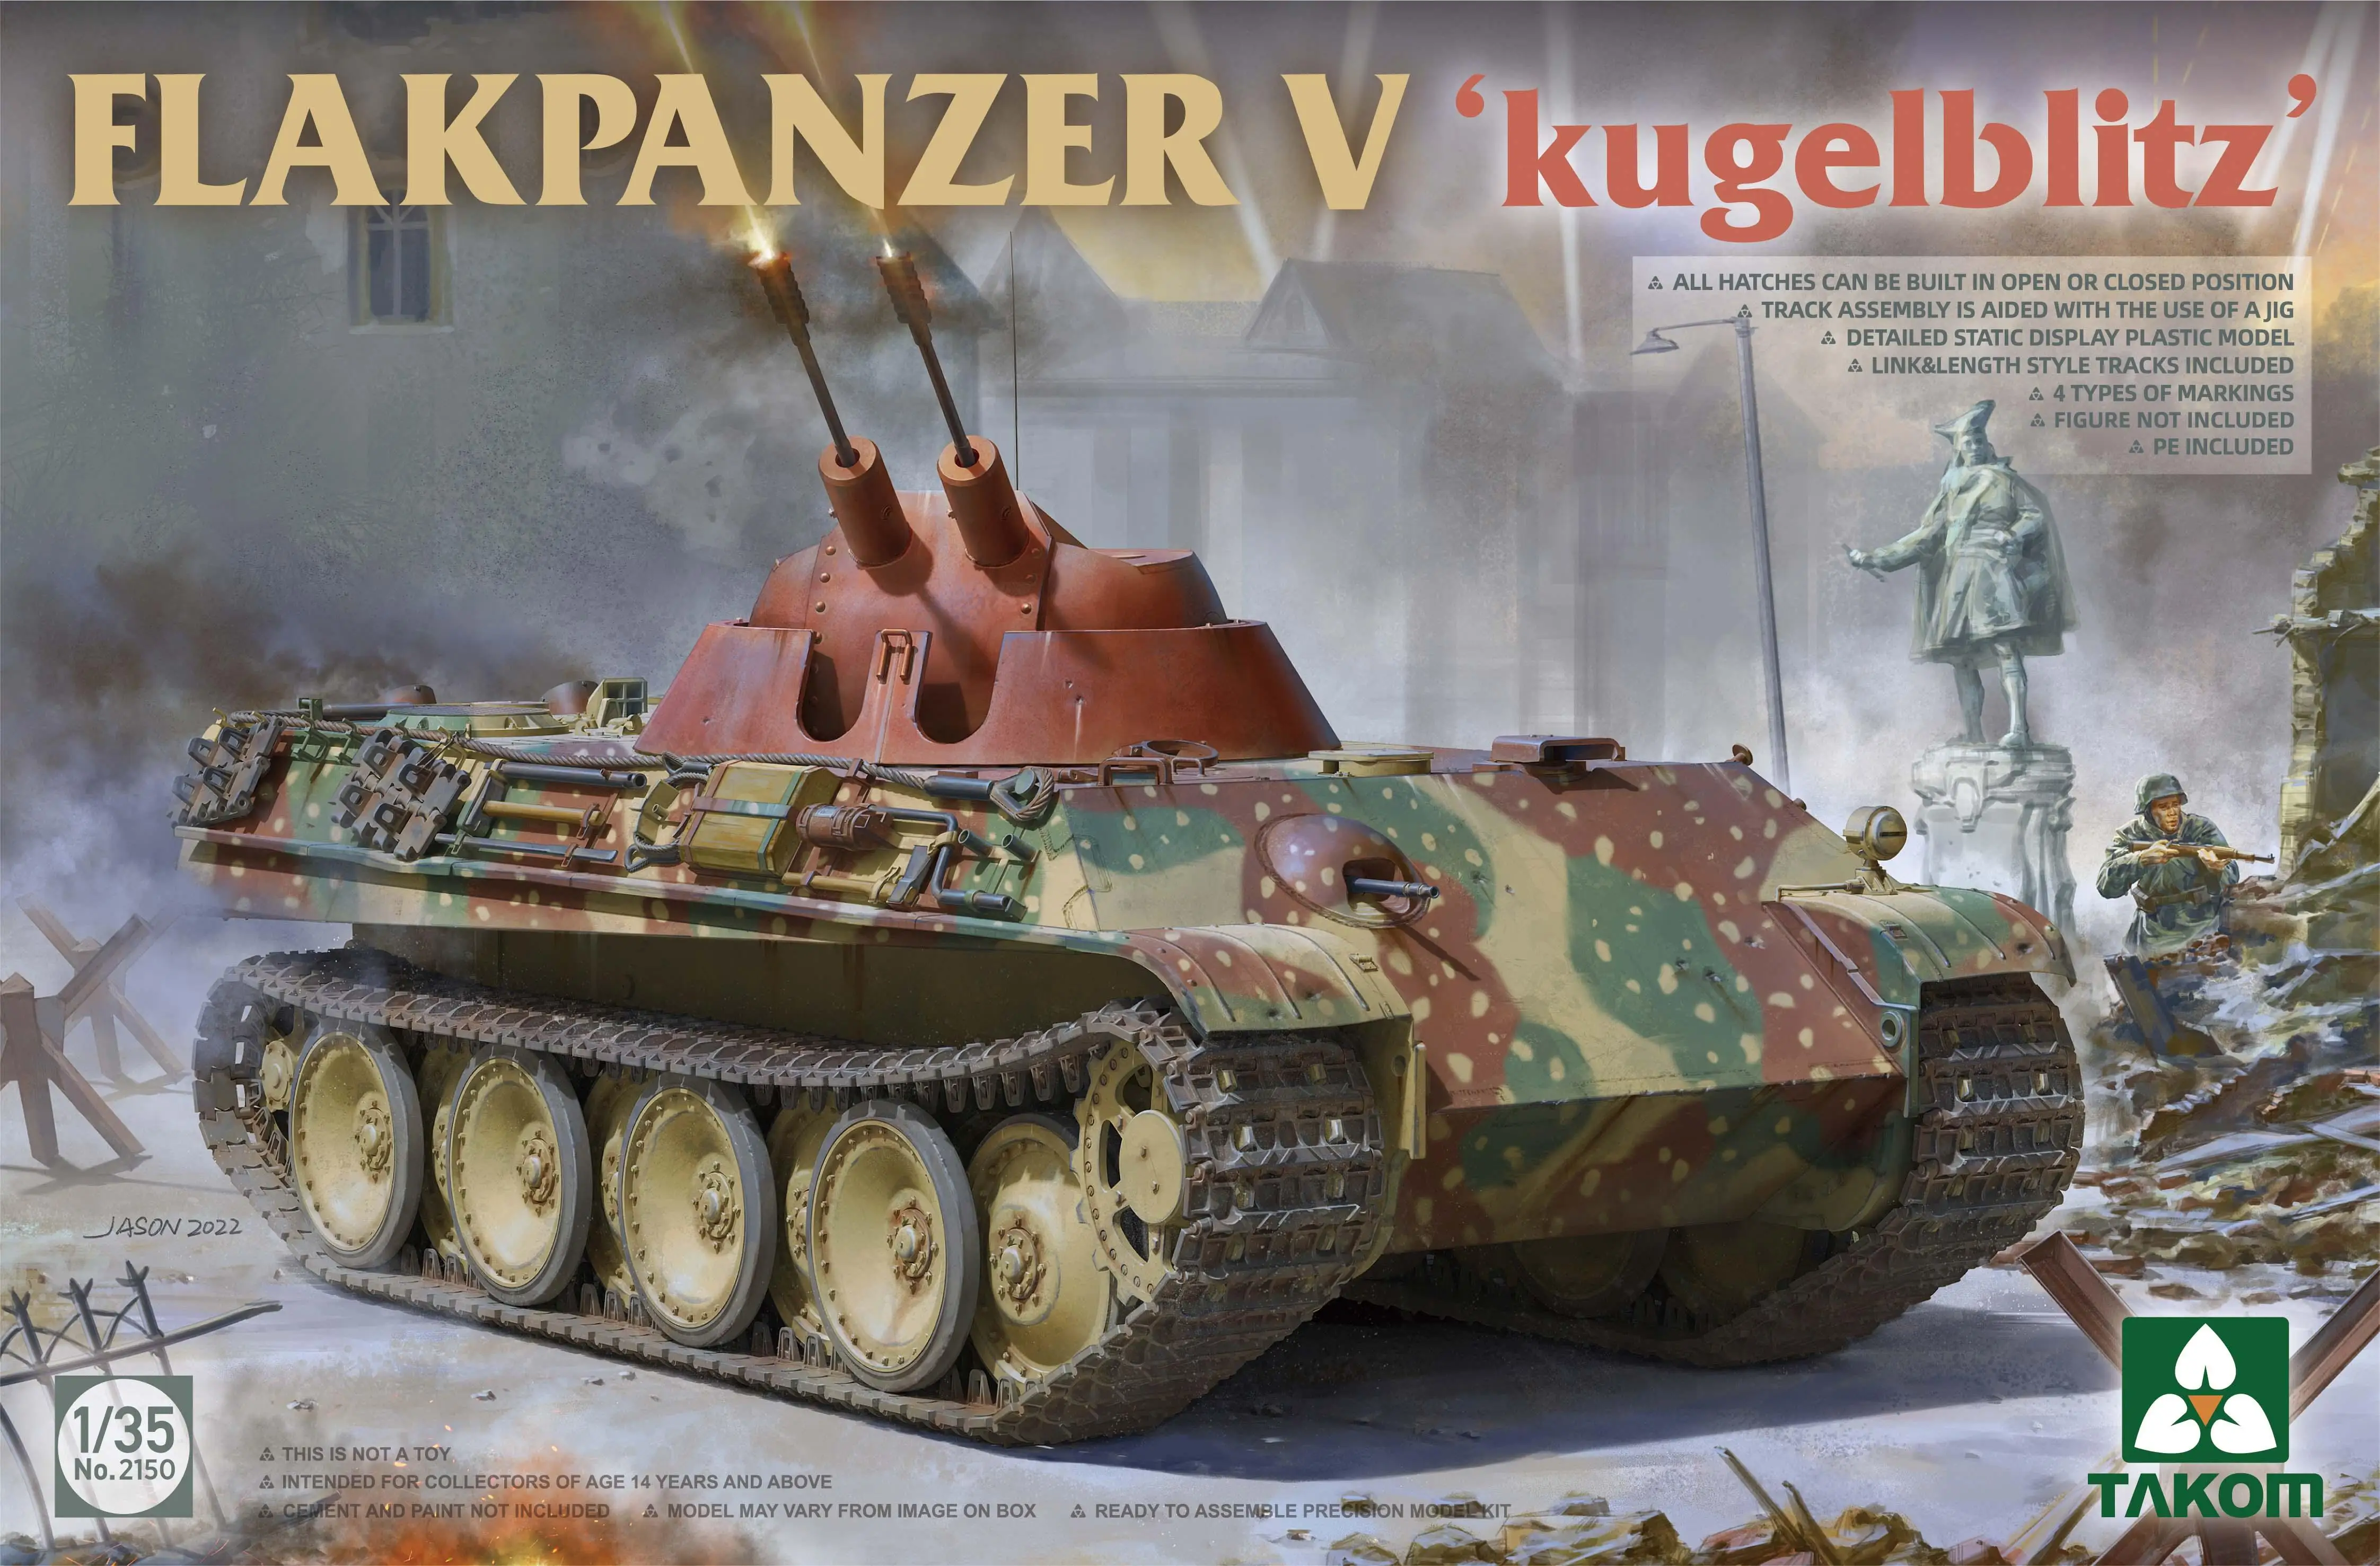 

Takom 2150 1/35 Scale Flakpanzer V `Kugelblitz` Plastic model kit